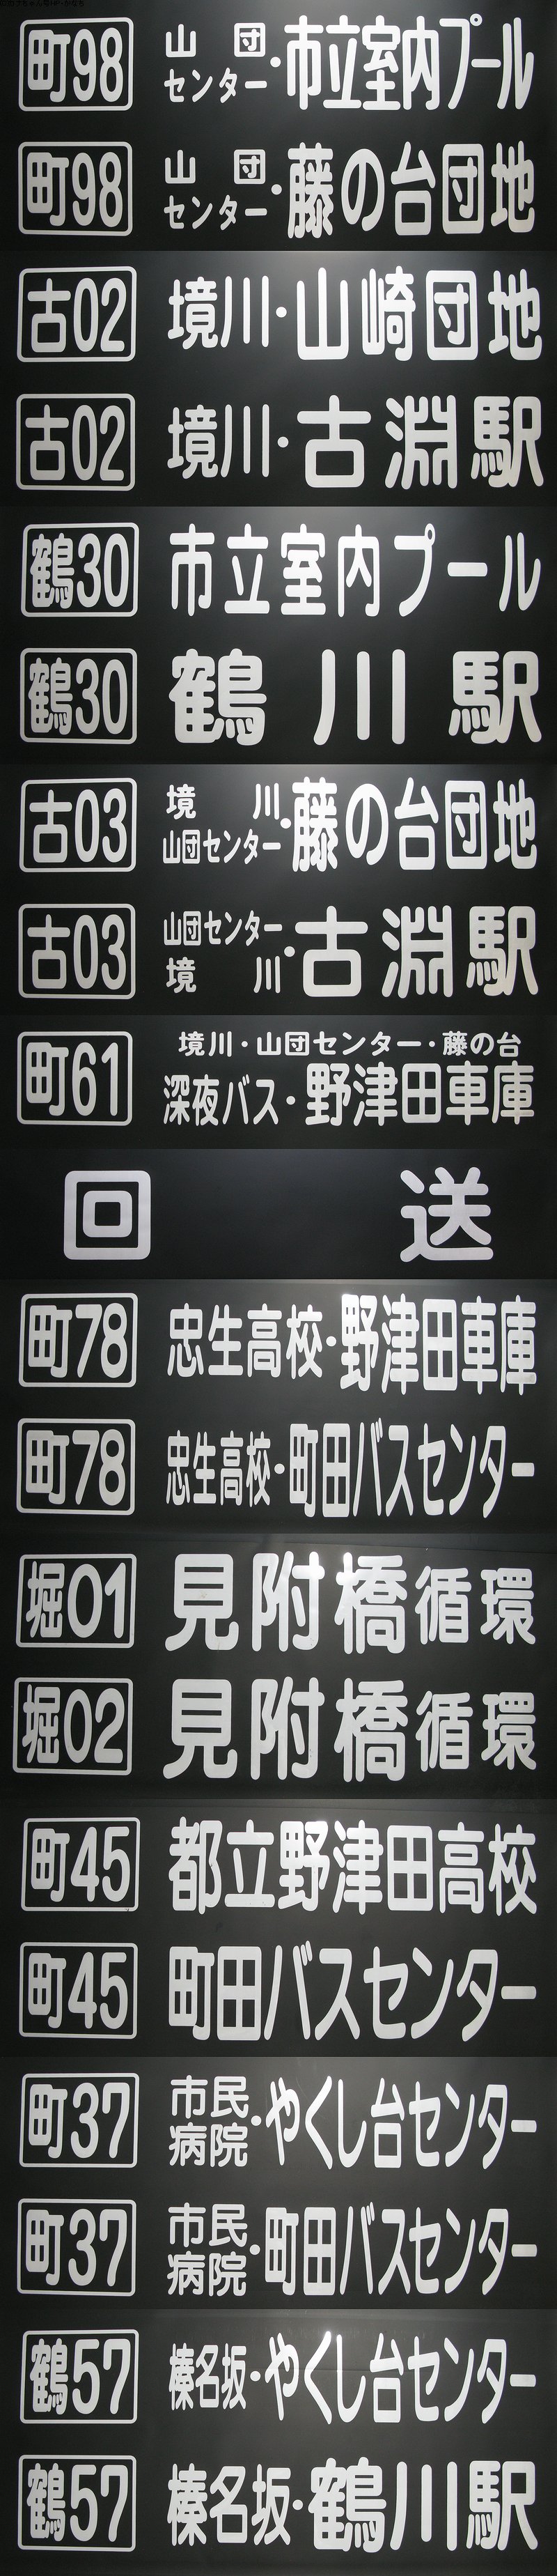 カナちゃん号-神奈中バス(神奈川中央交通-かなちゅう)ファンページ